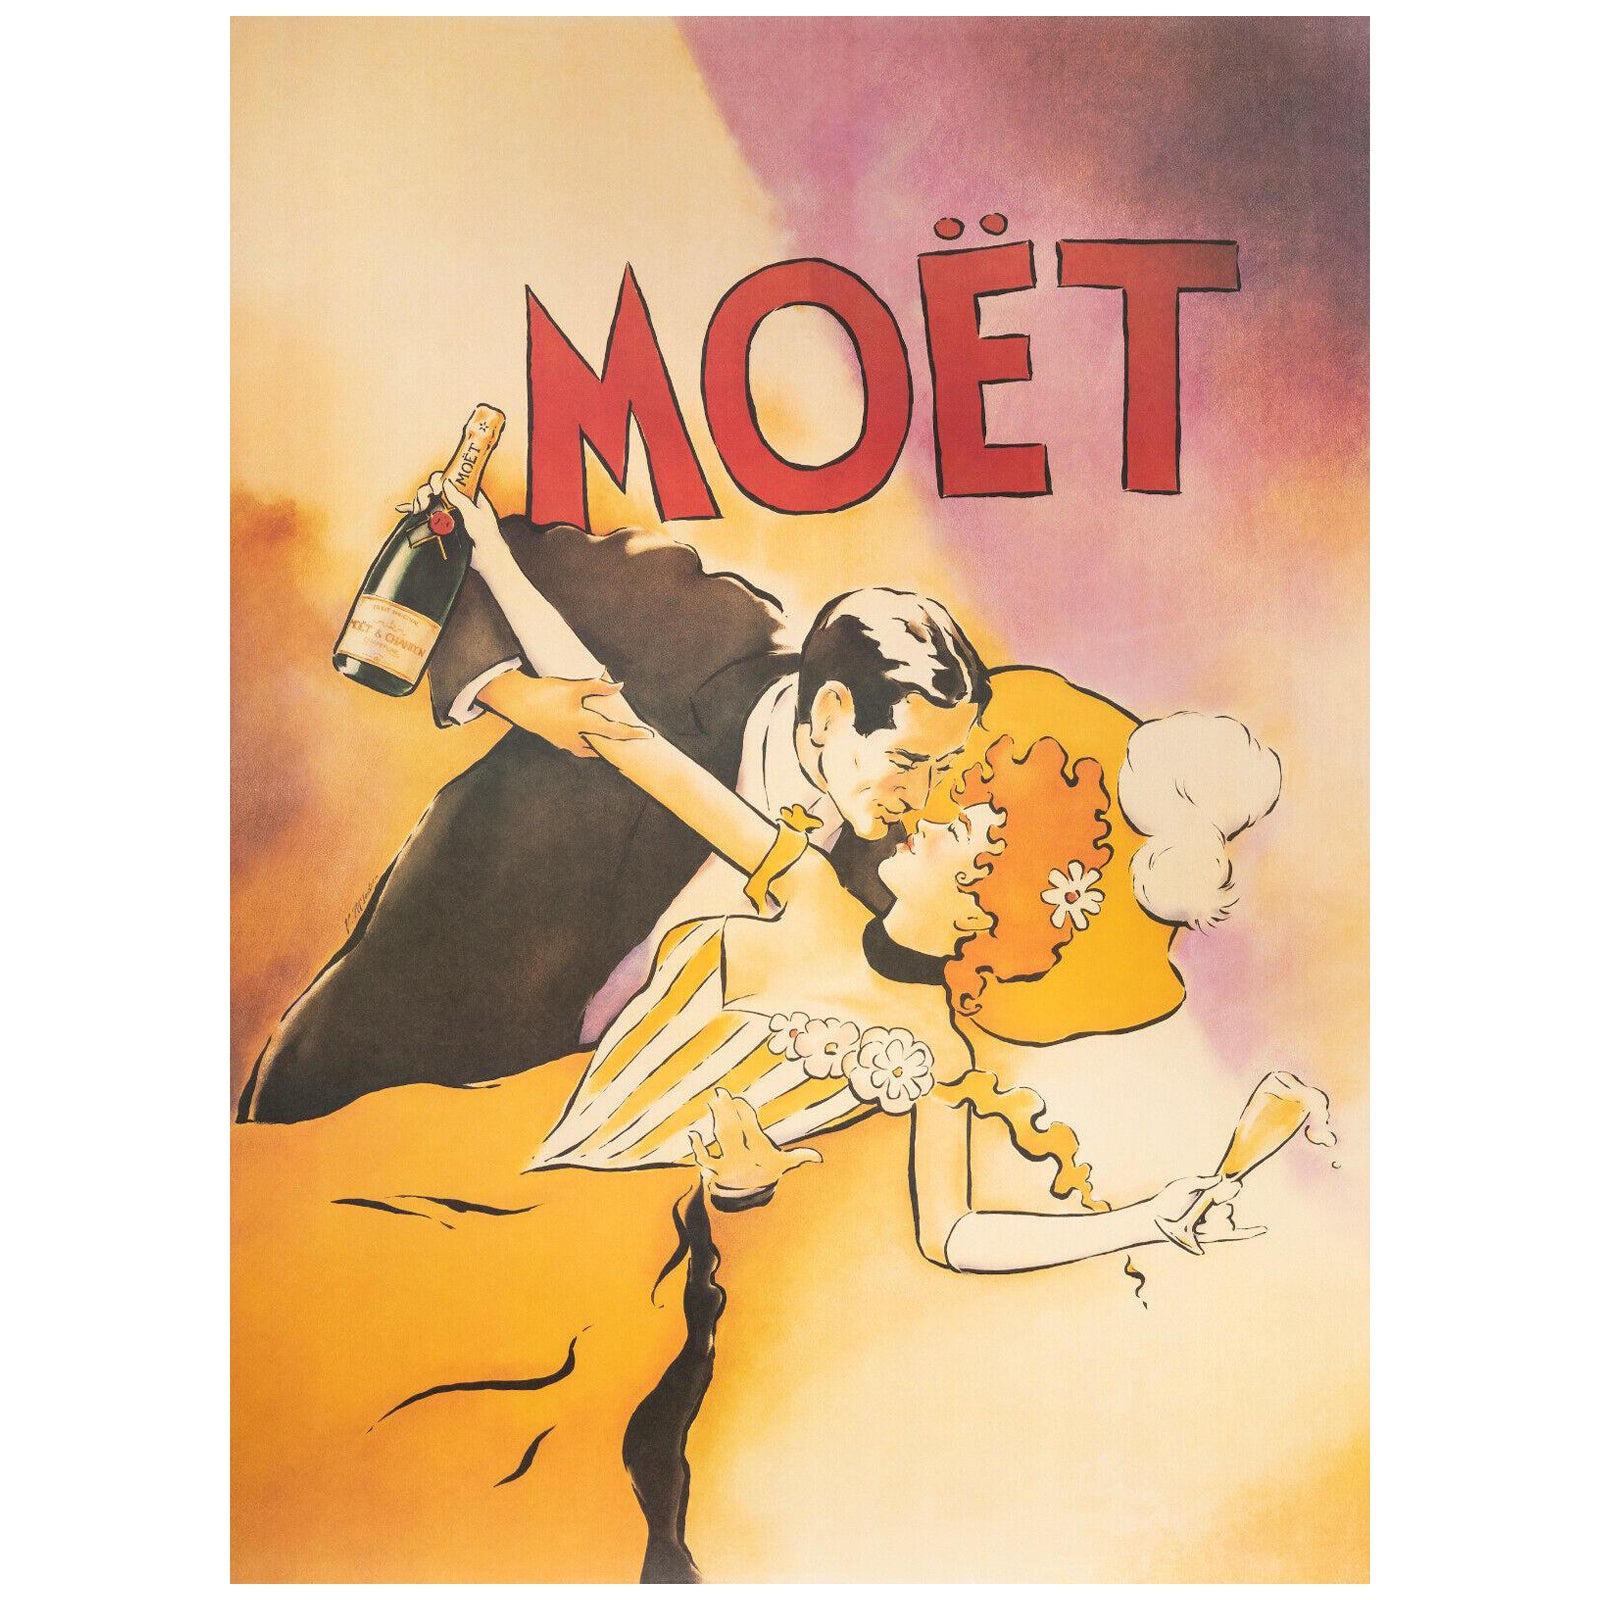 Original Poster-V. McIndoe-couple-Moet-Chandon-Champagne, 1986